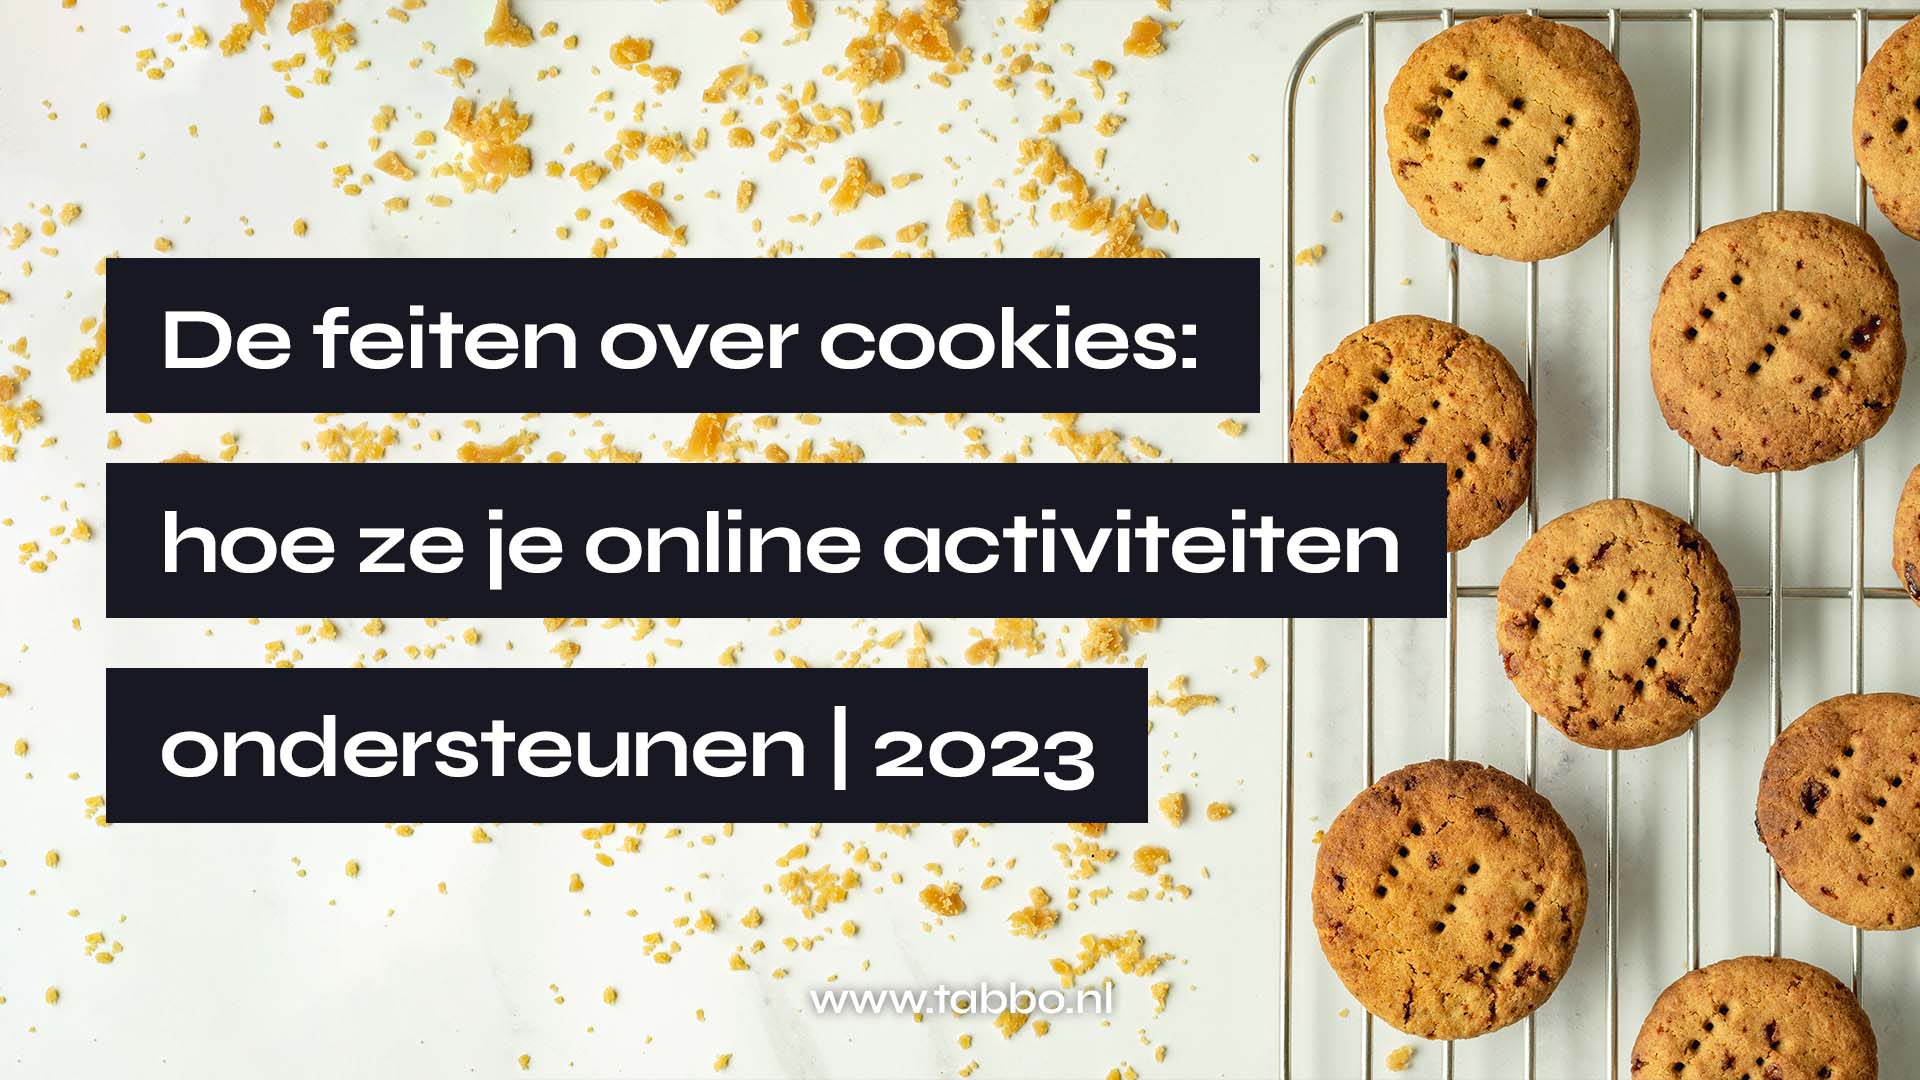 De feiten over cookies: hoe je ze online activiteiten ondersteunen